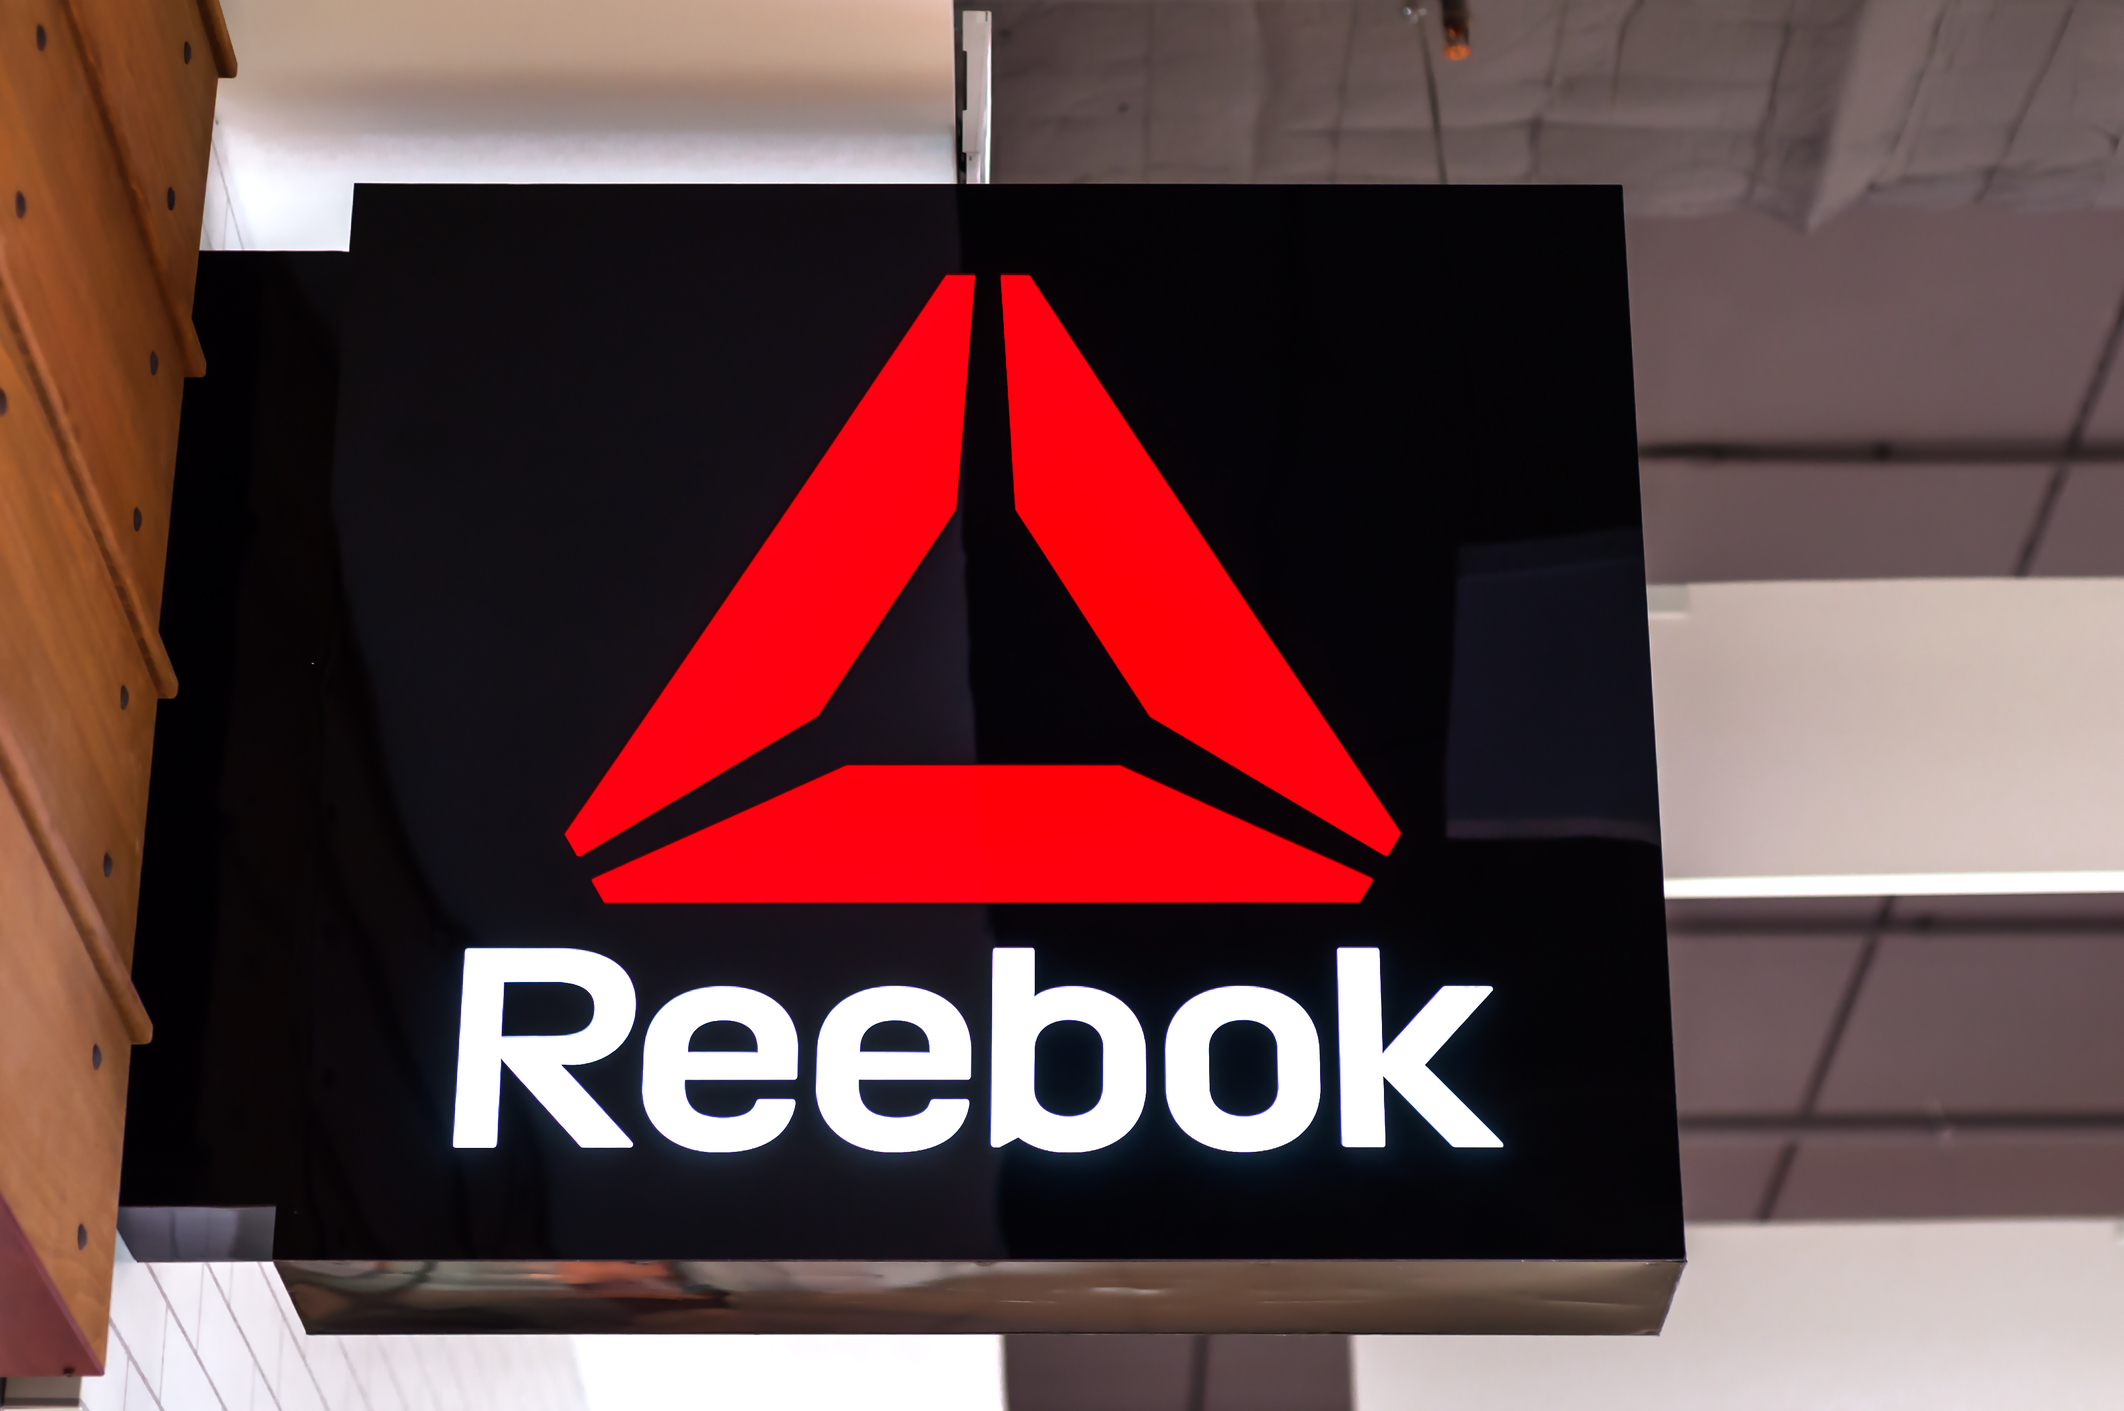 Brengen Makkelijk te begrijpen Afkorting Reebok promo code: Take 40% off full price and 50% off sale - Clark Deals